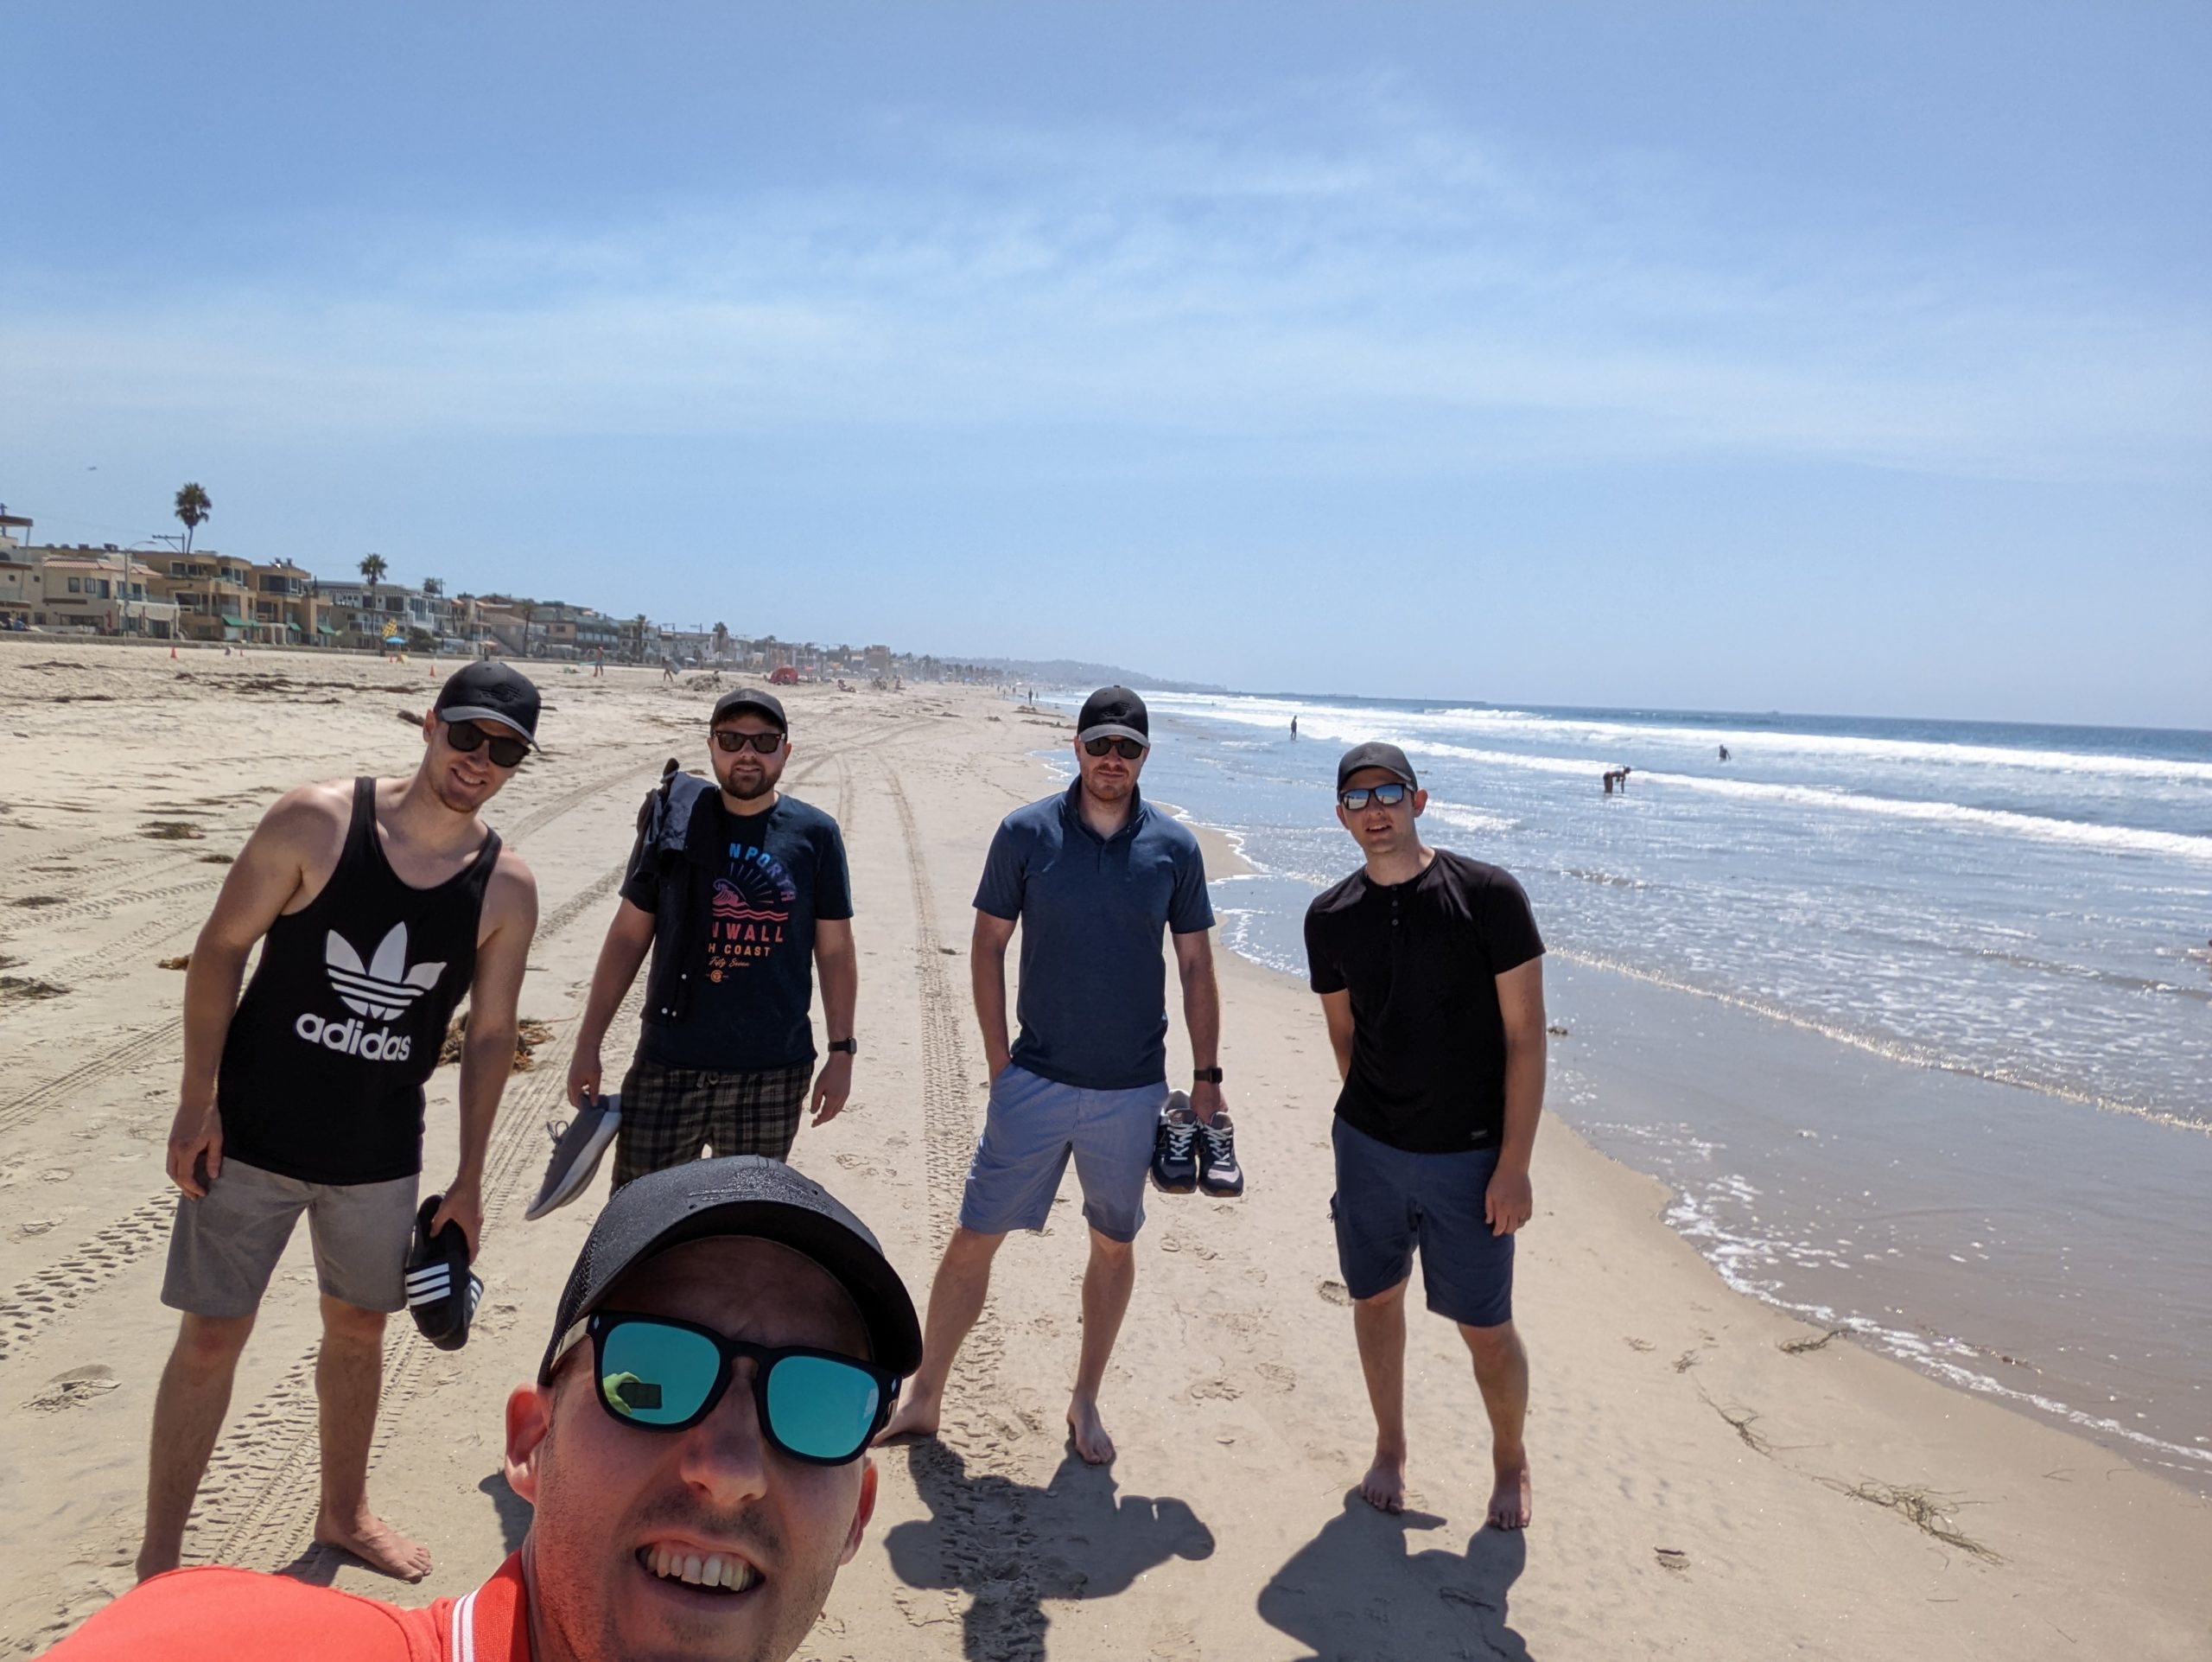 SpinupWP team on Mission Beach